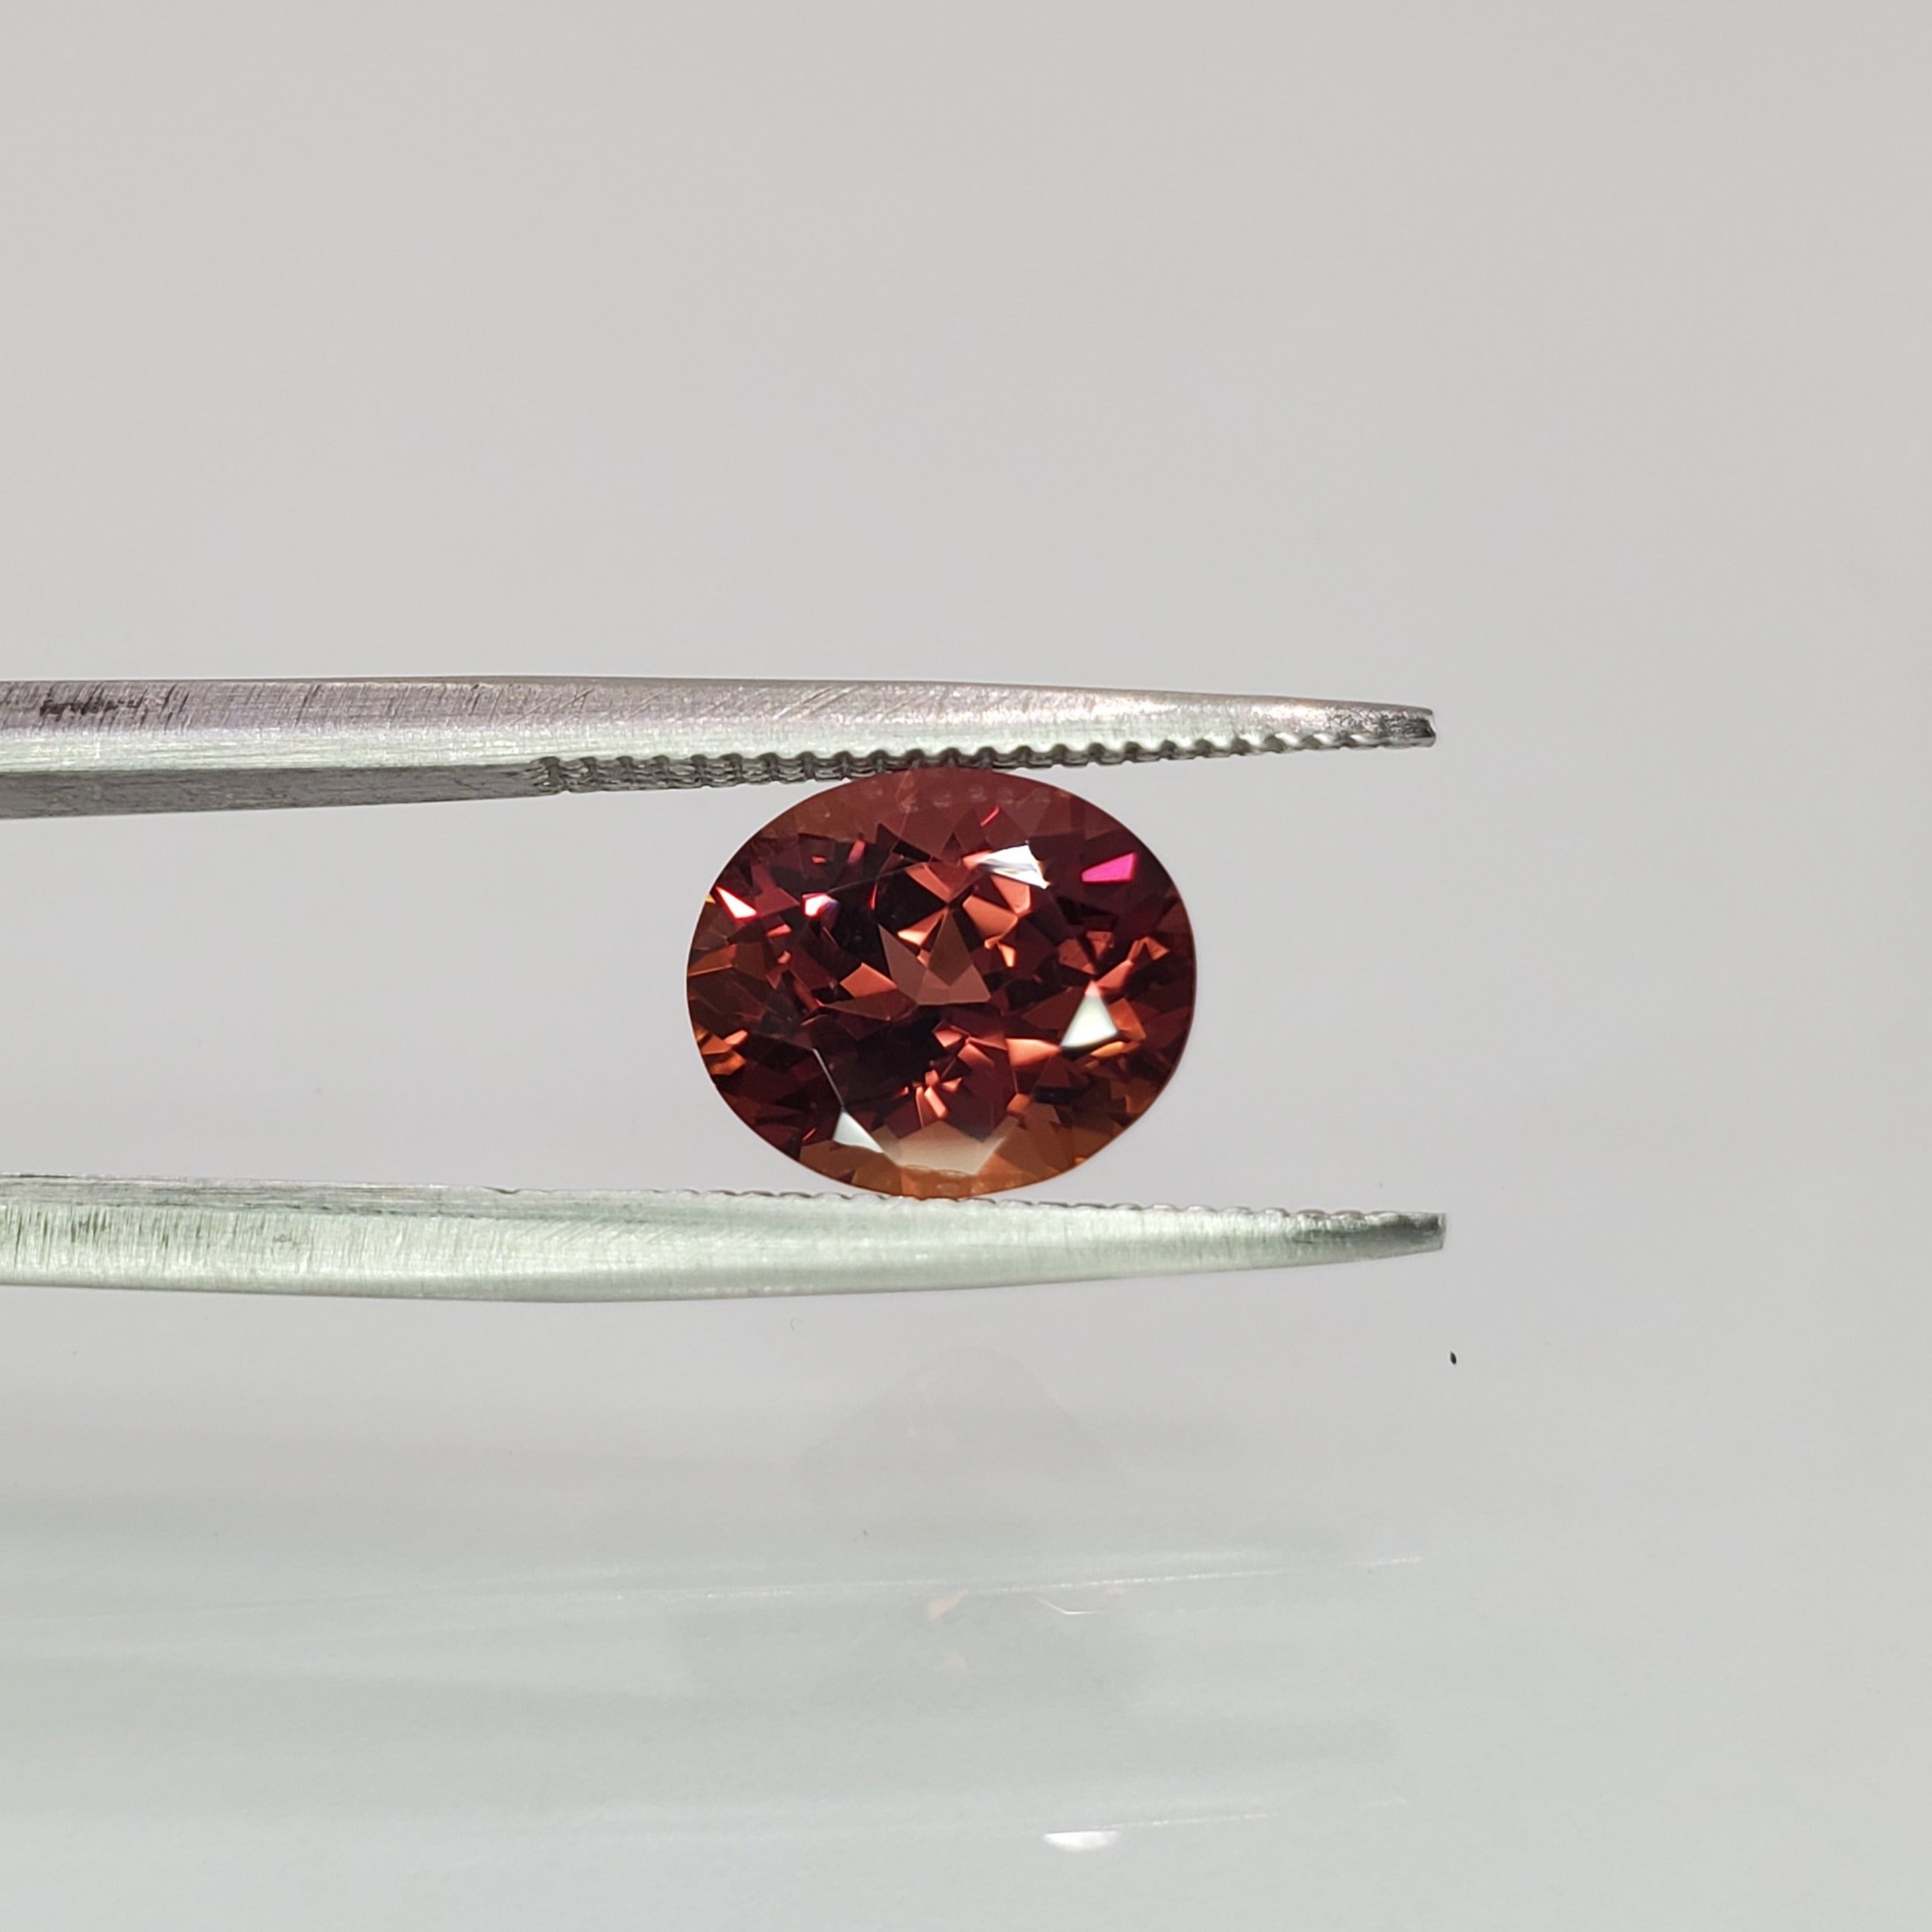 2.63 carat oval cut orange-purple loose sapphire gemstone